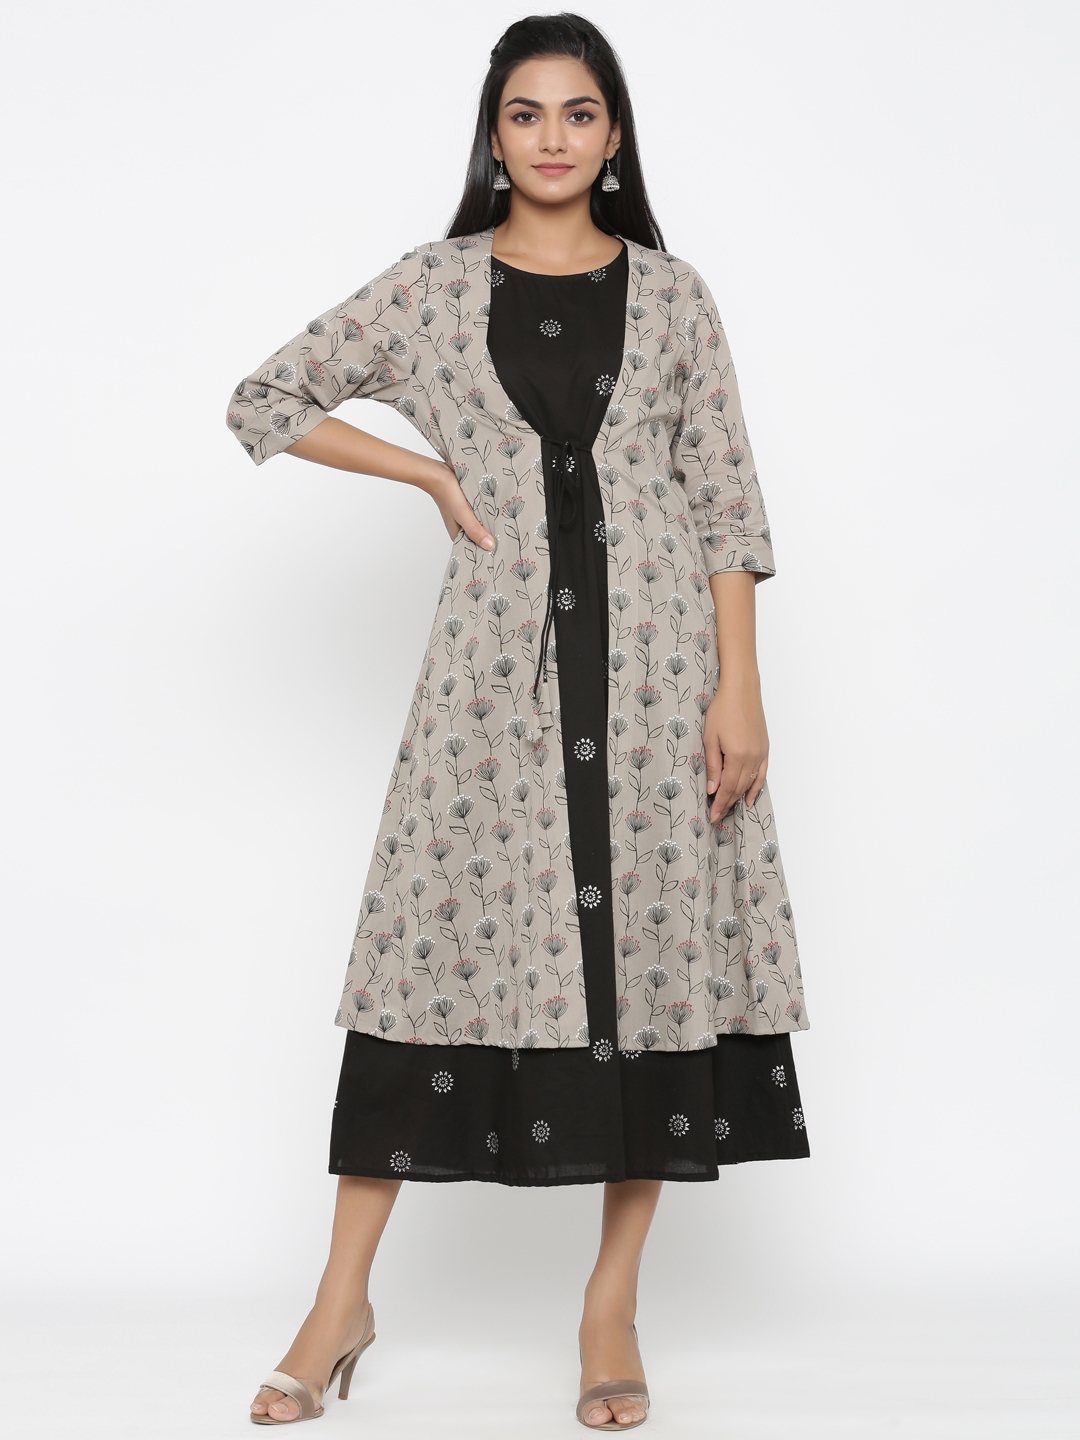 Miravan | Miravan cotton  printed  kurta With Jacket for women's / girls 